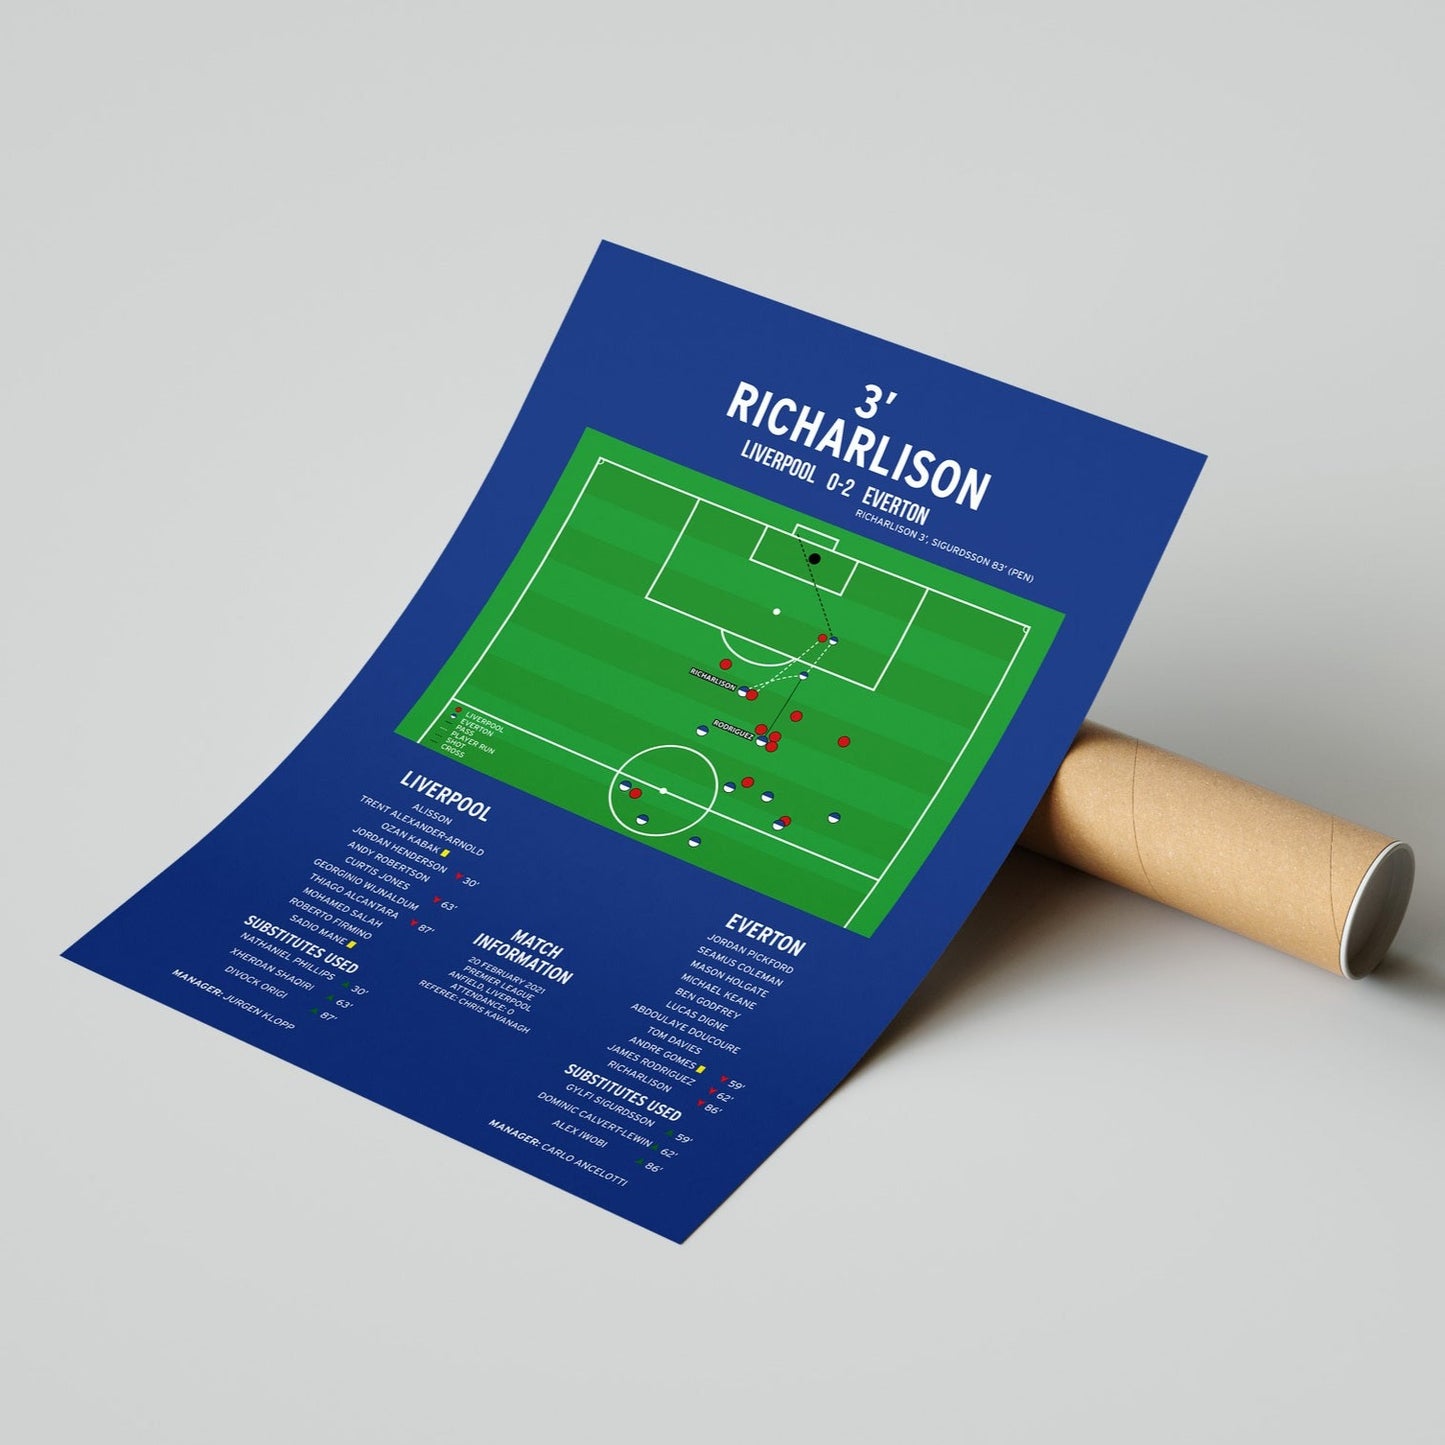 Richarlison Goal – Liverpool vs Everton – Premier League 2021